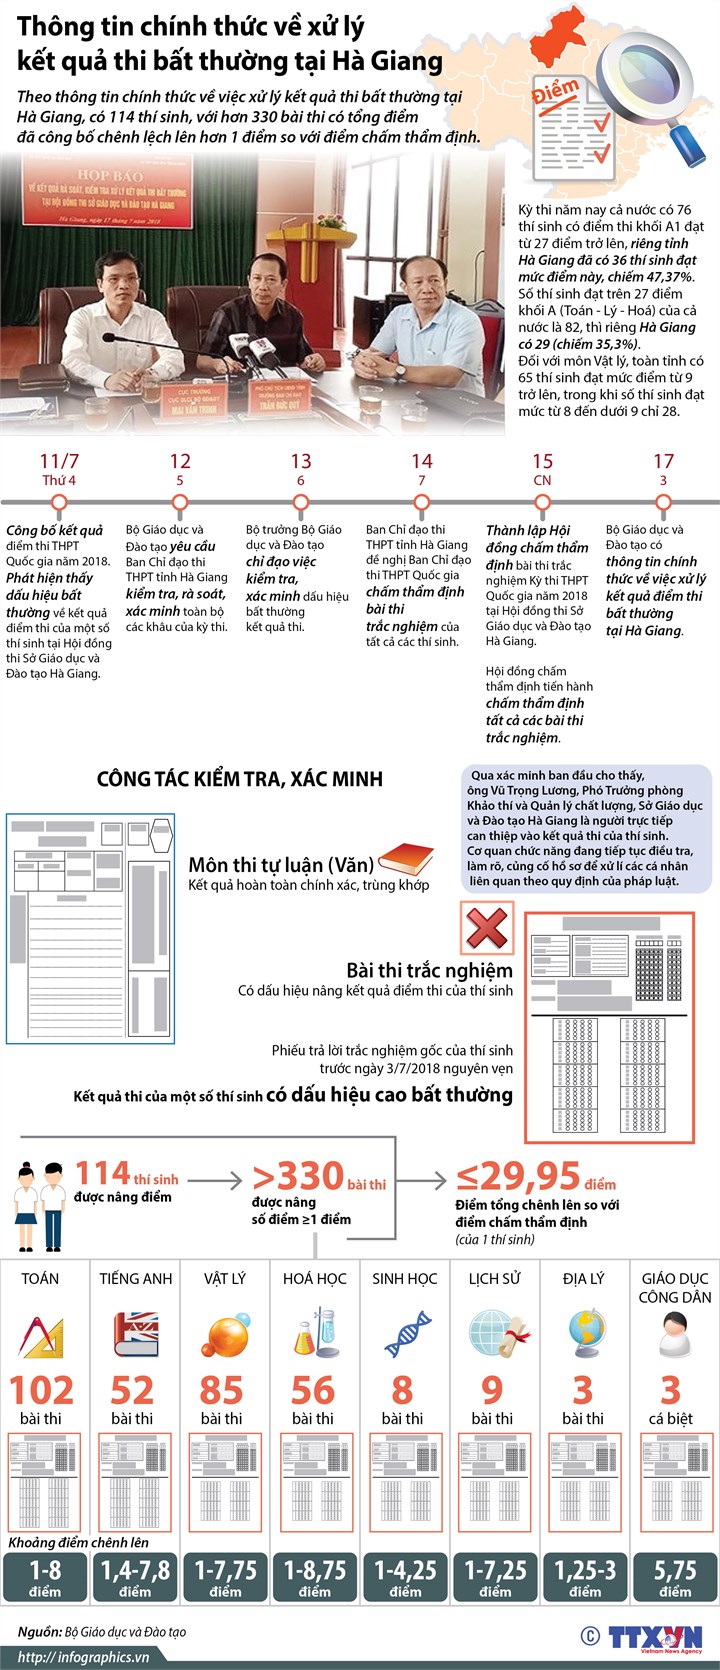 [Infographic] Thông tin chính thức về xử lý kết quả thi bất thường tại Hà Giang - Ảnh 1